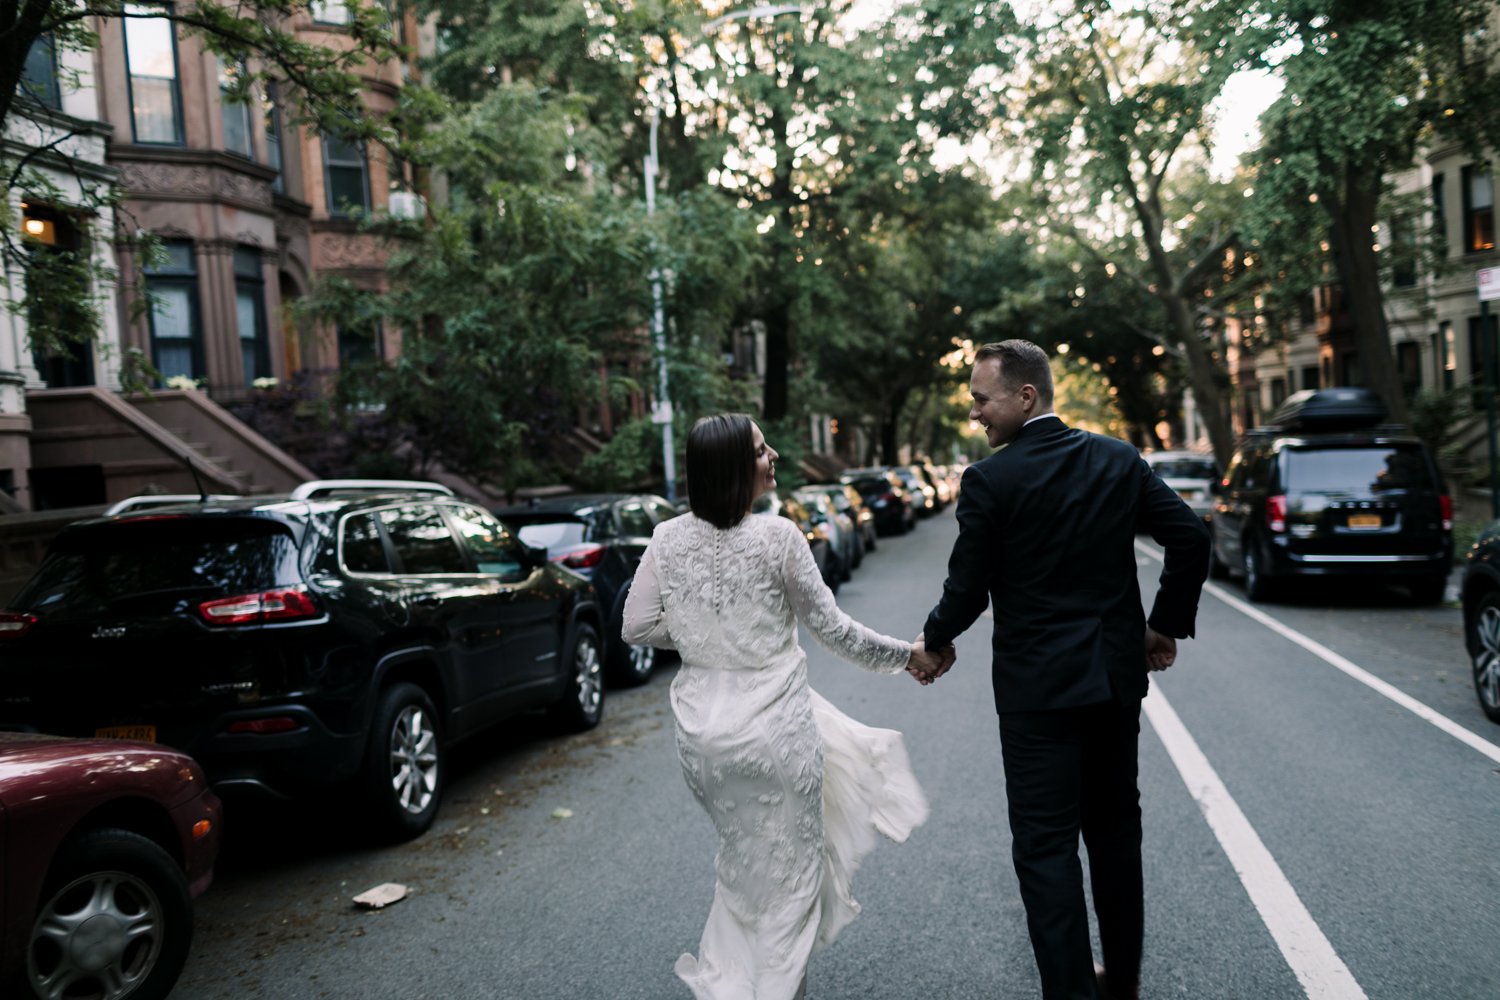 Brooklyn-Society-for-Ethical-Culture-wedding-02.jpg